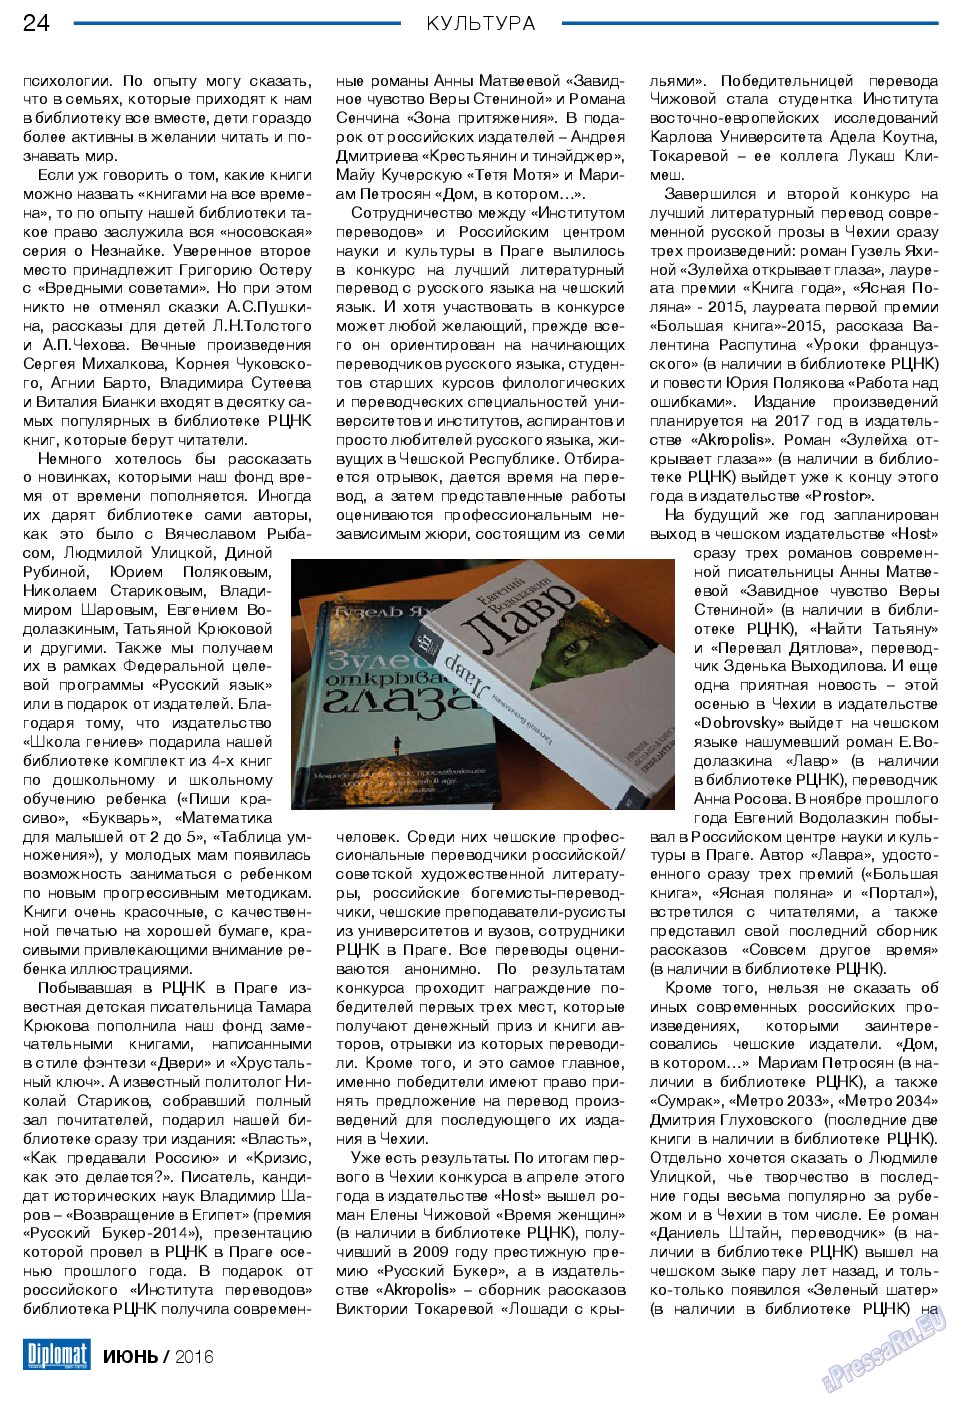 Diplomat, газета. 2016 №81 стр.24